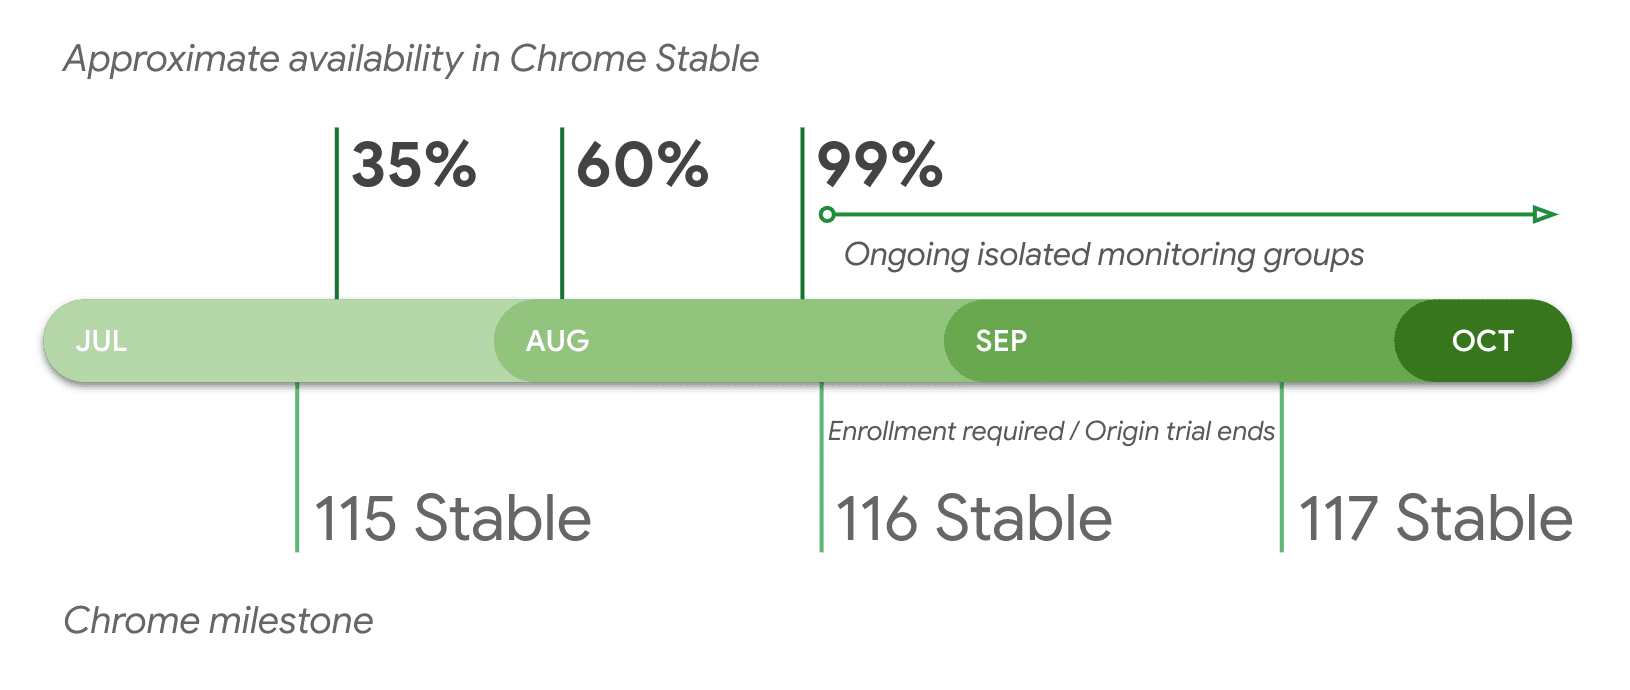 در دسترس بودن تقریبی در Chrome Stable بر اساس نسخه.